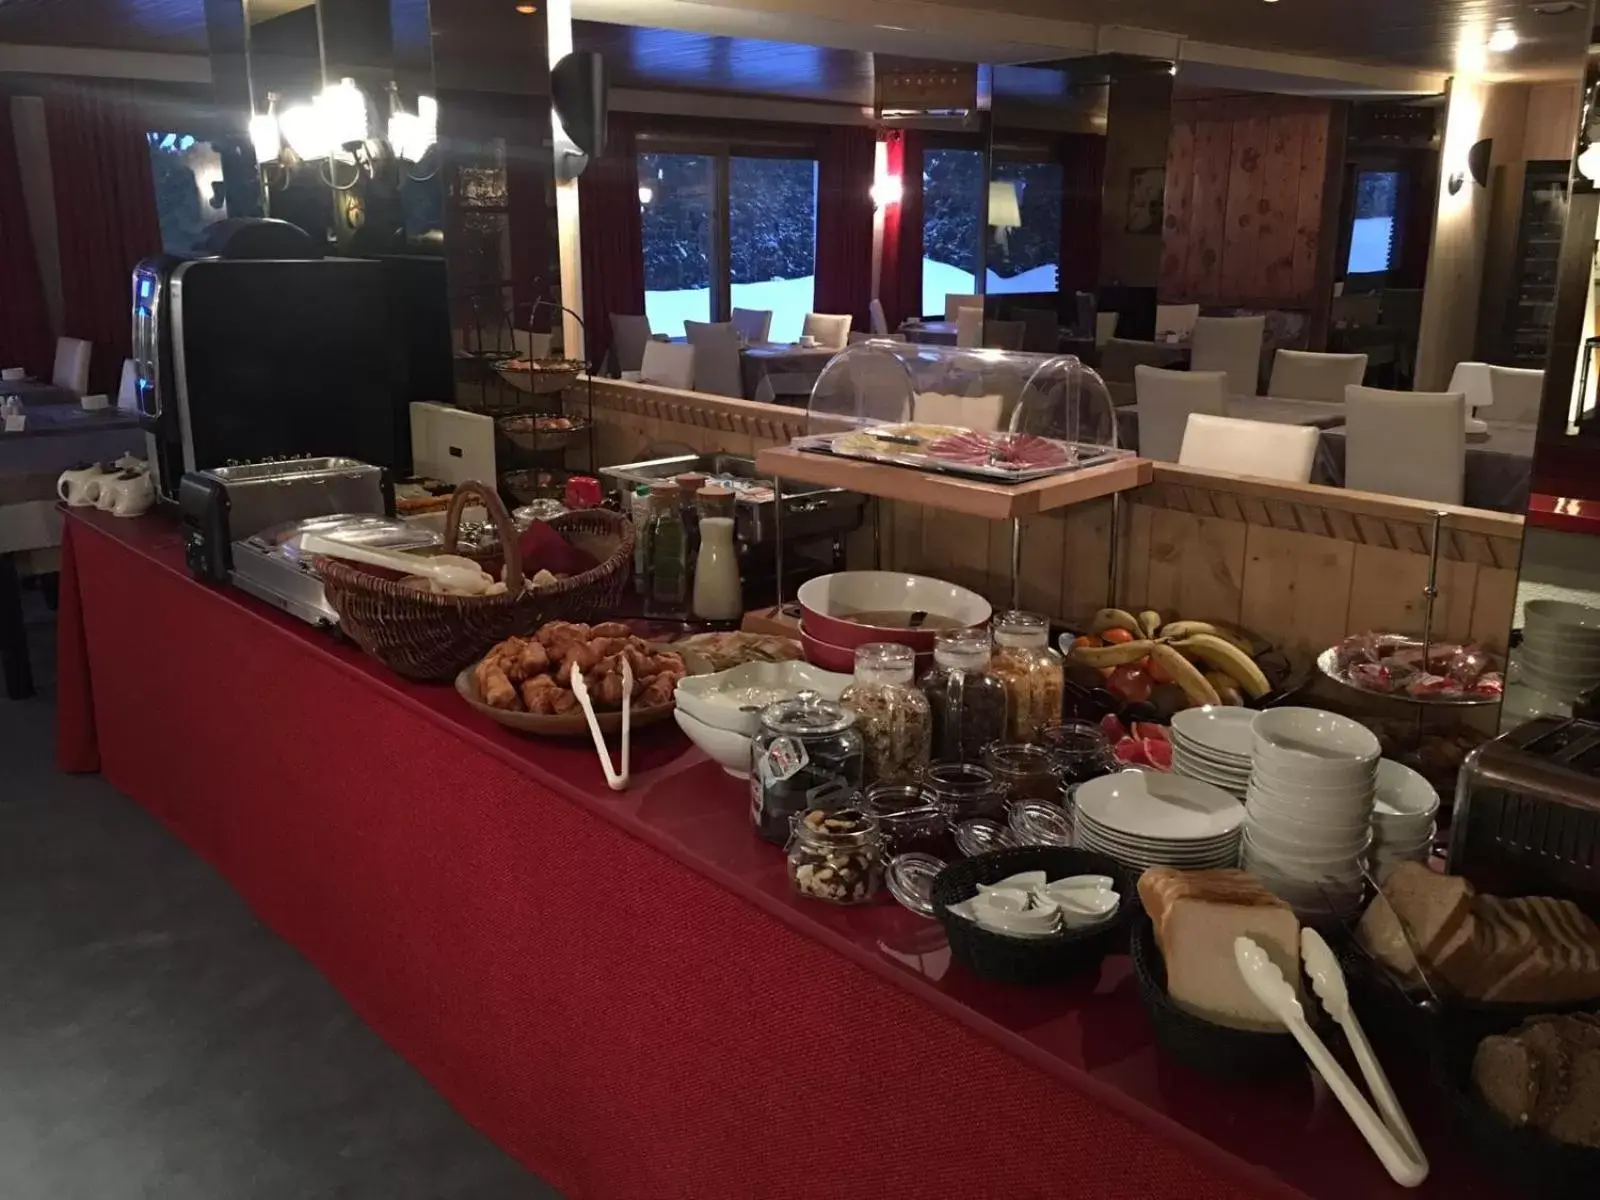 Buffet breakfast in Hotel Bel'alpe